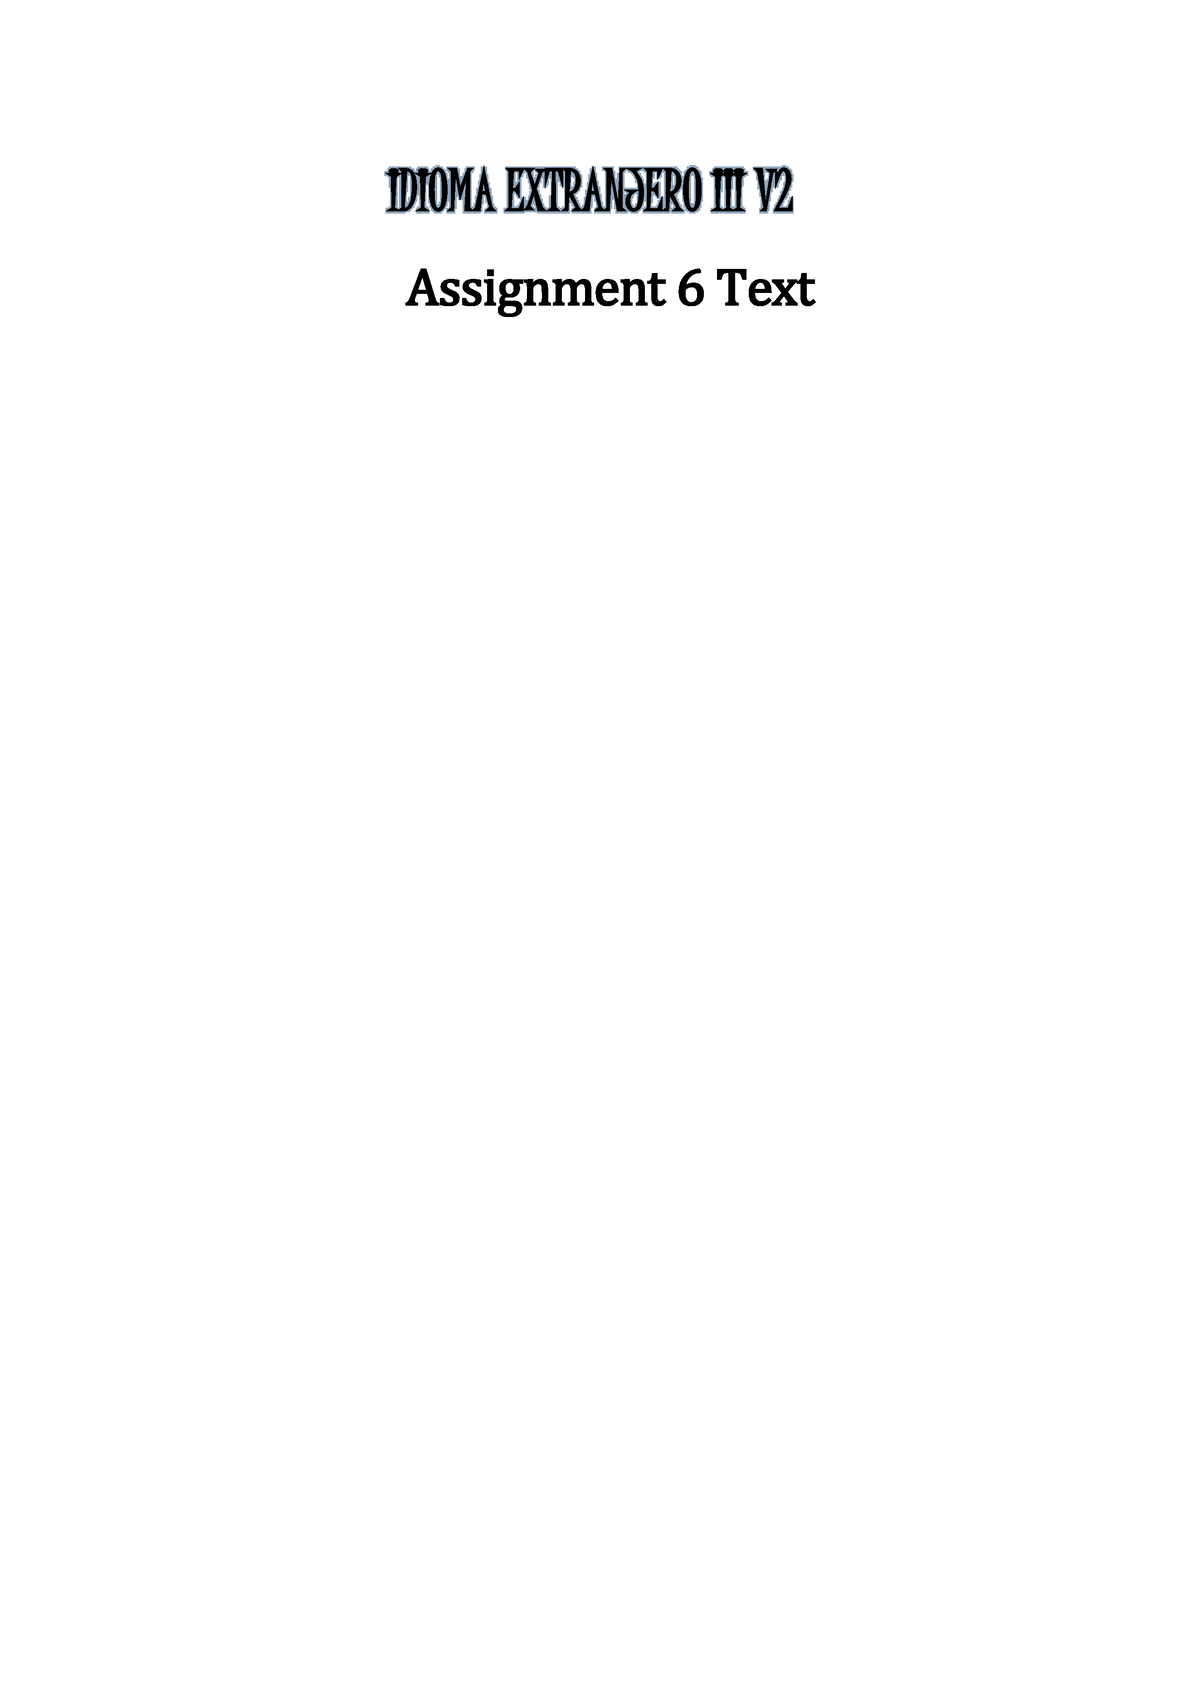 assignment 6 text idioma extranjero iii v2